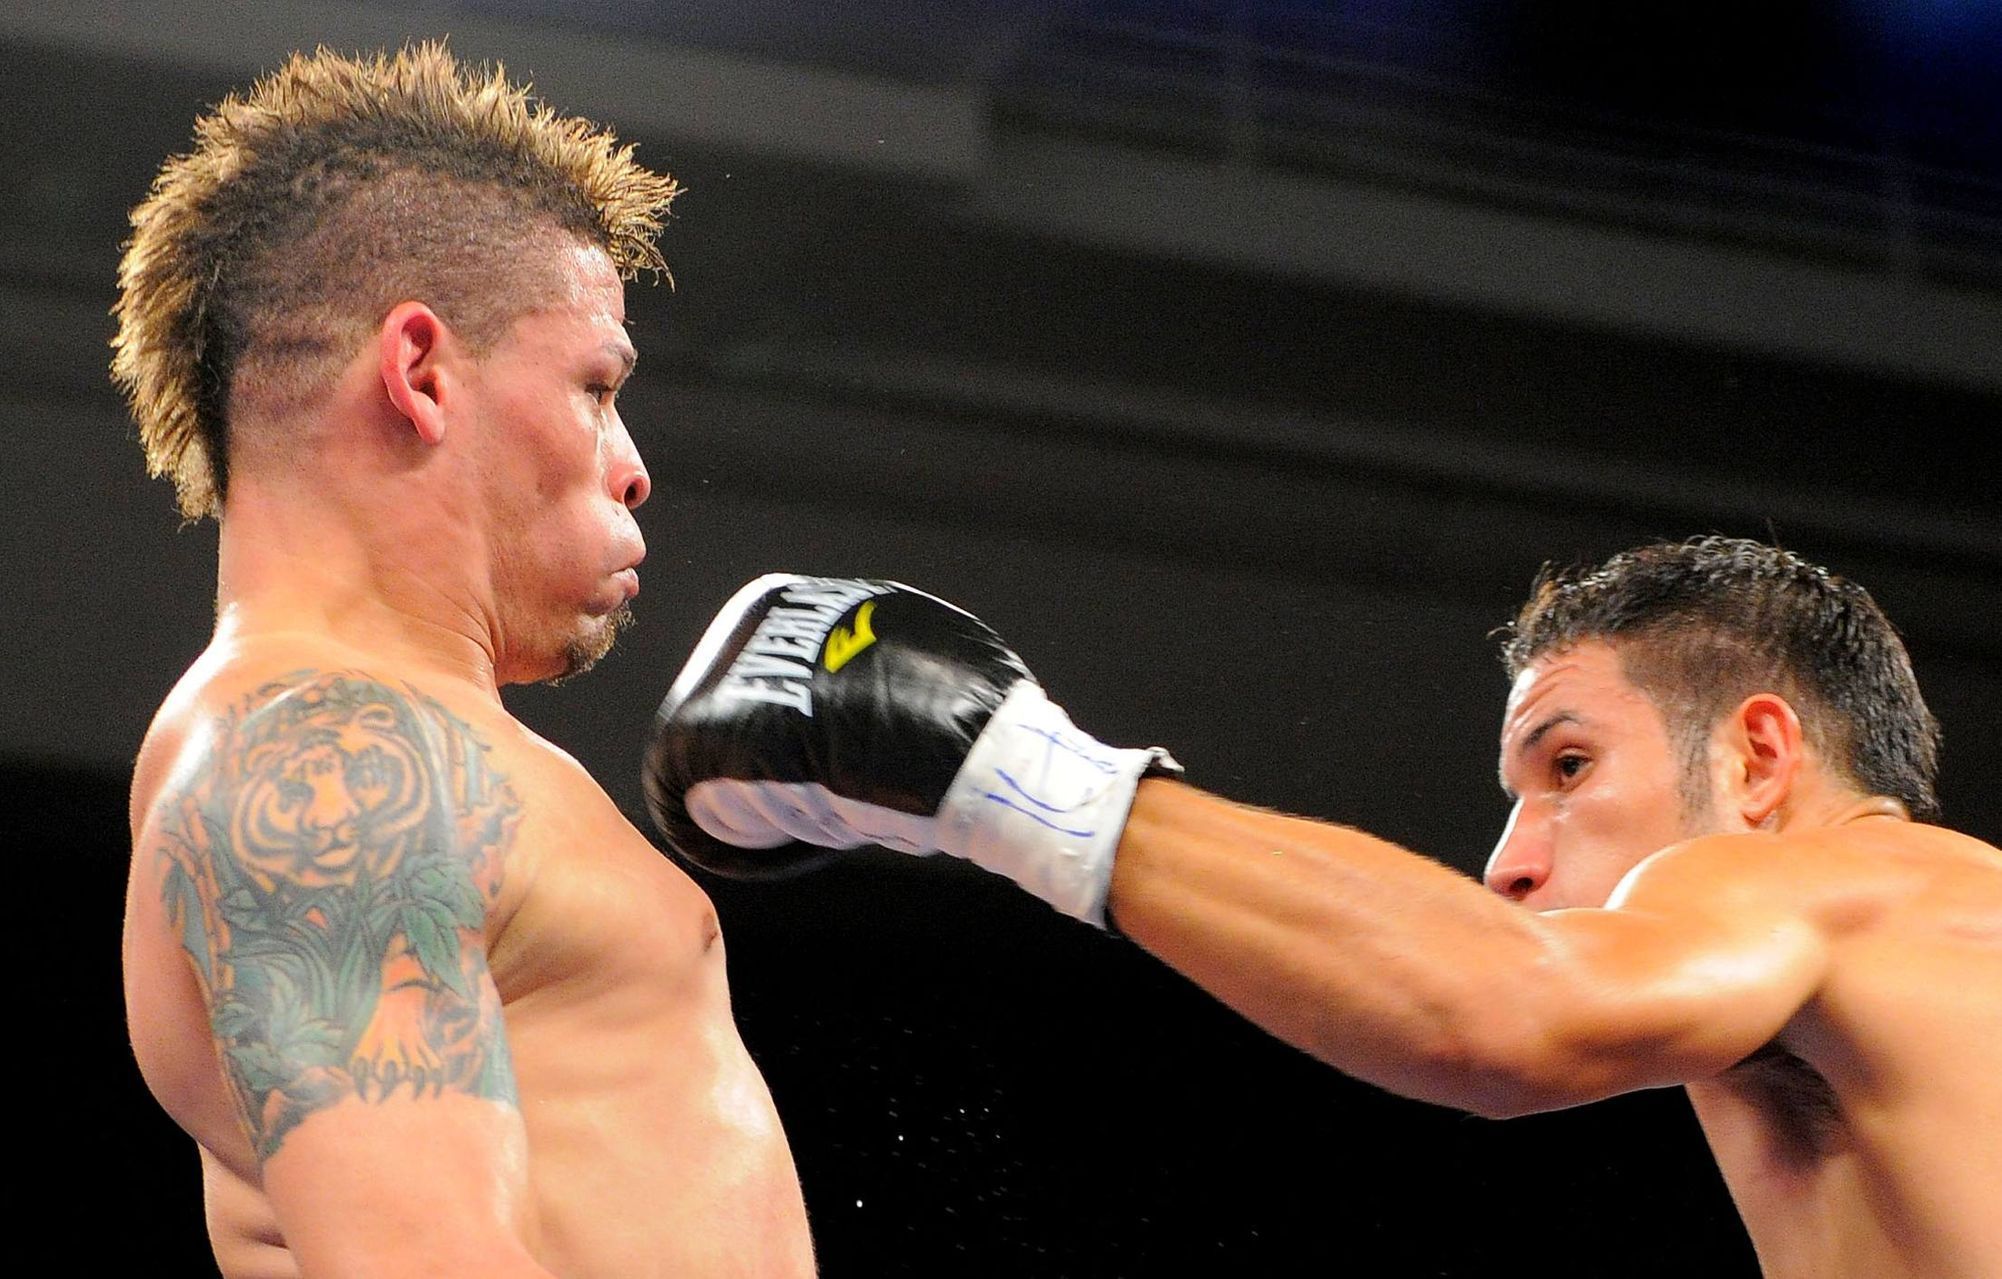 Portorický boxer Orlando Cruz v souboji s Mexičanem Jorge Pazosem během zápasu i mistra světa WBO NABO v muší váze.